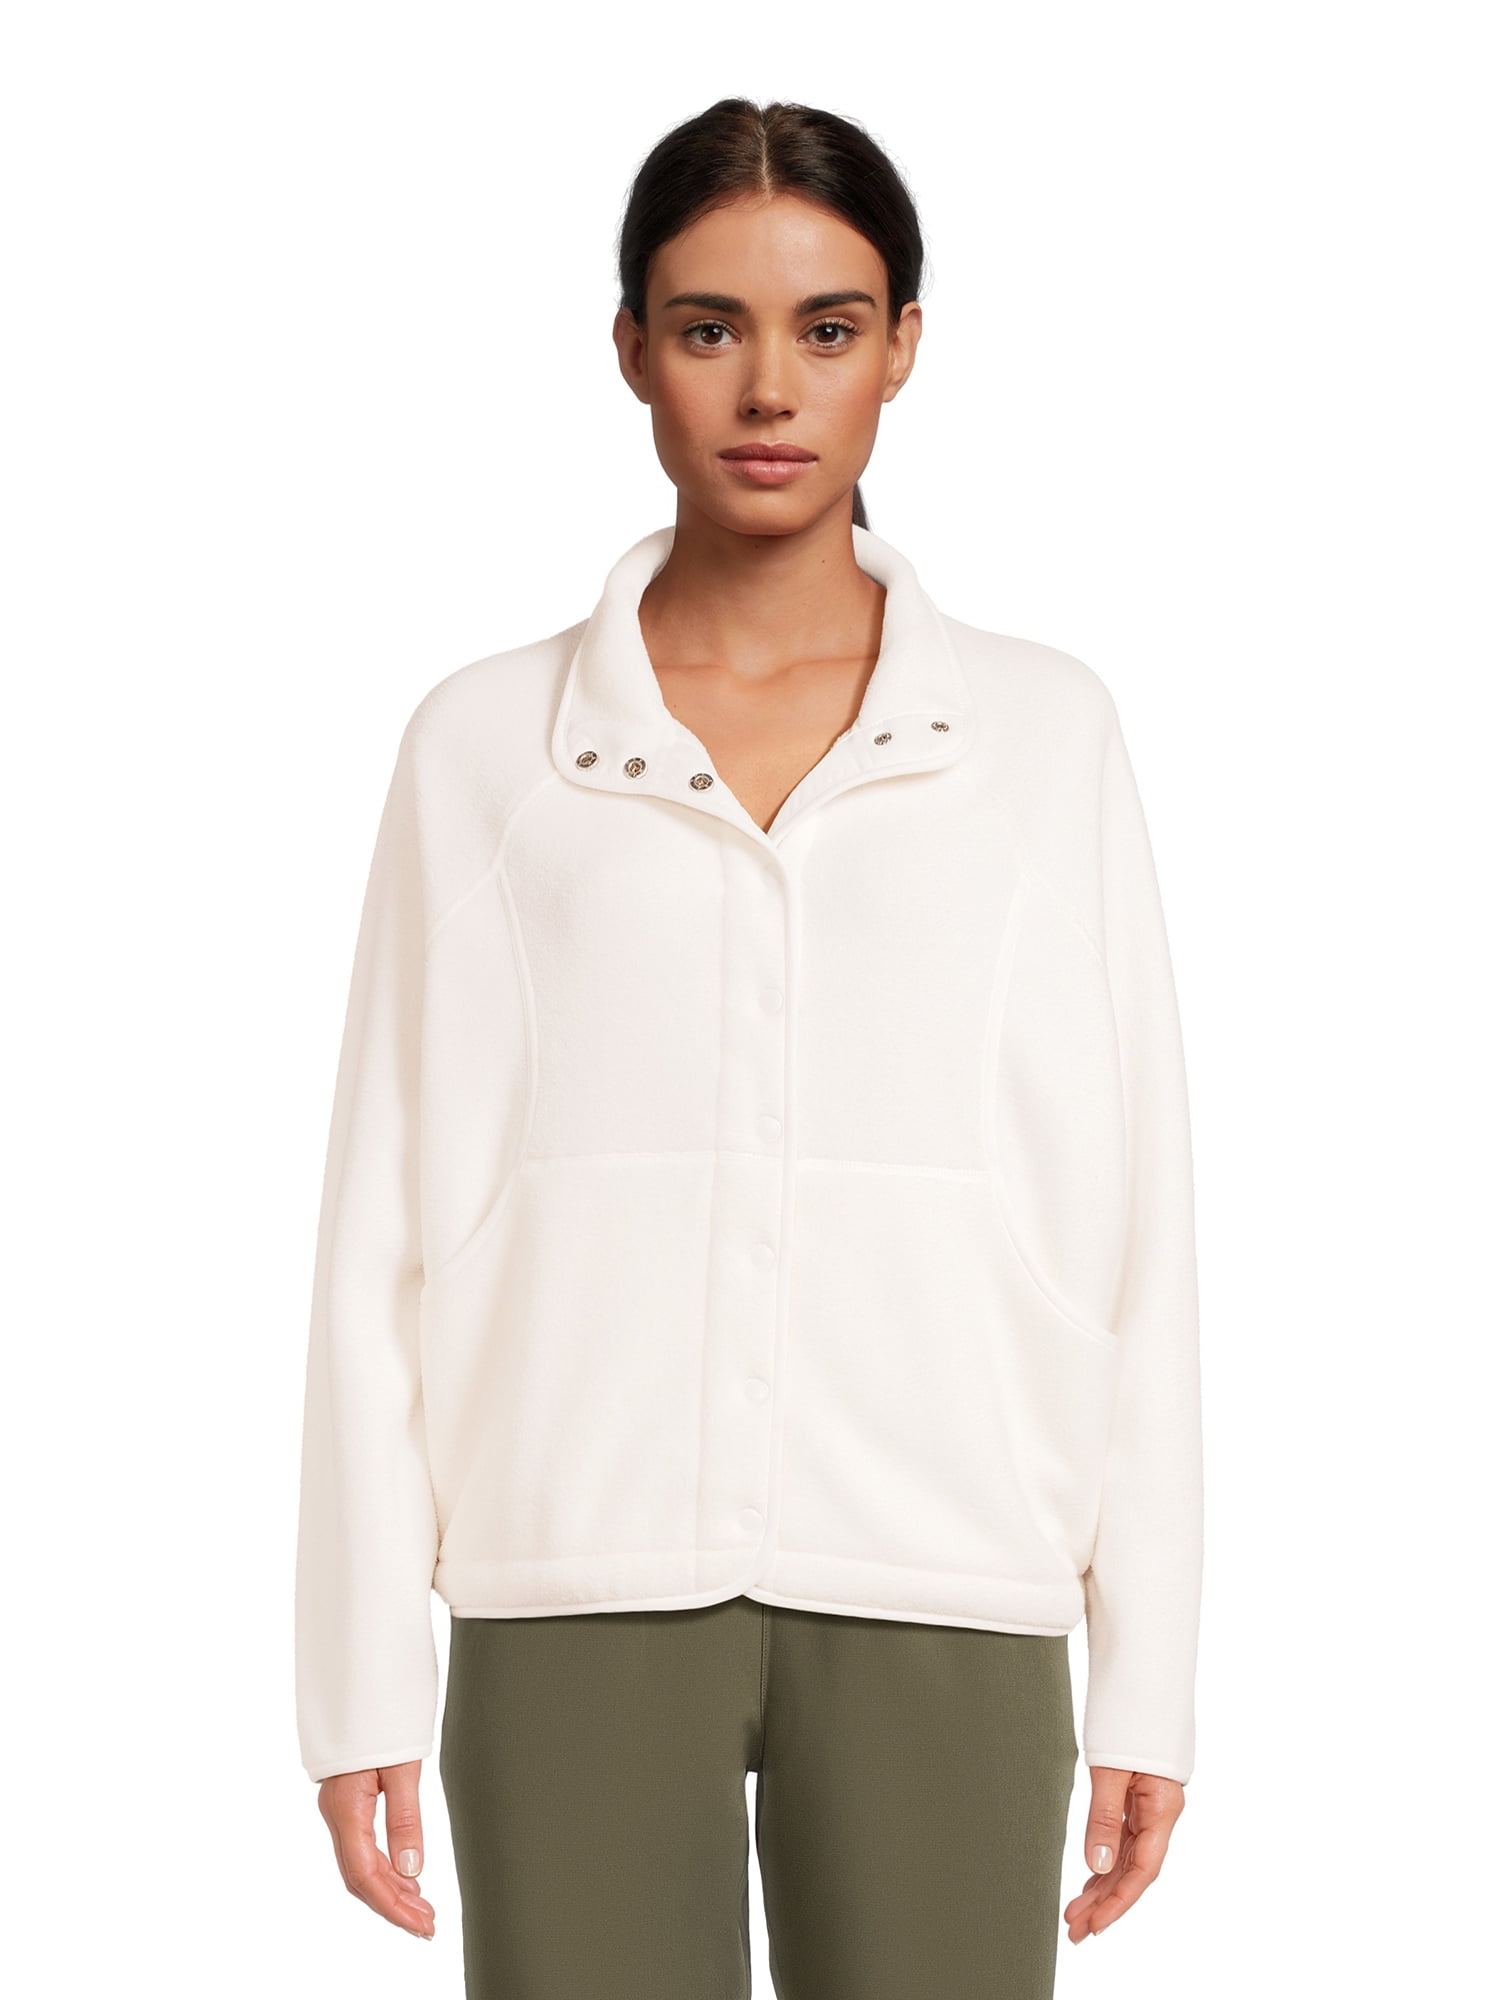 Avia Women's Snap Fleece Mock Neck Jacket, Sizes XS-XXXL - Walmart.com